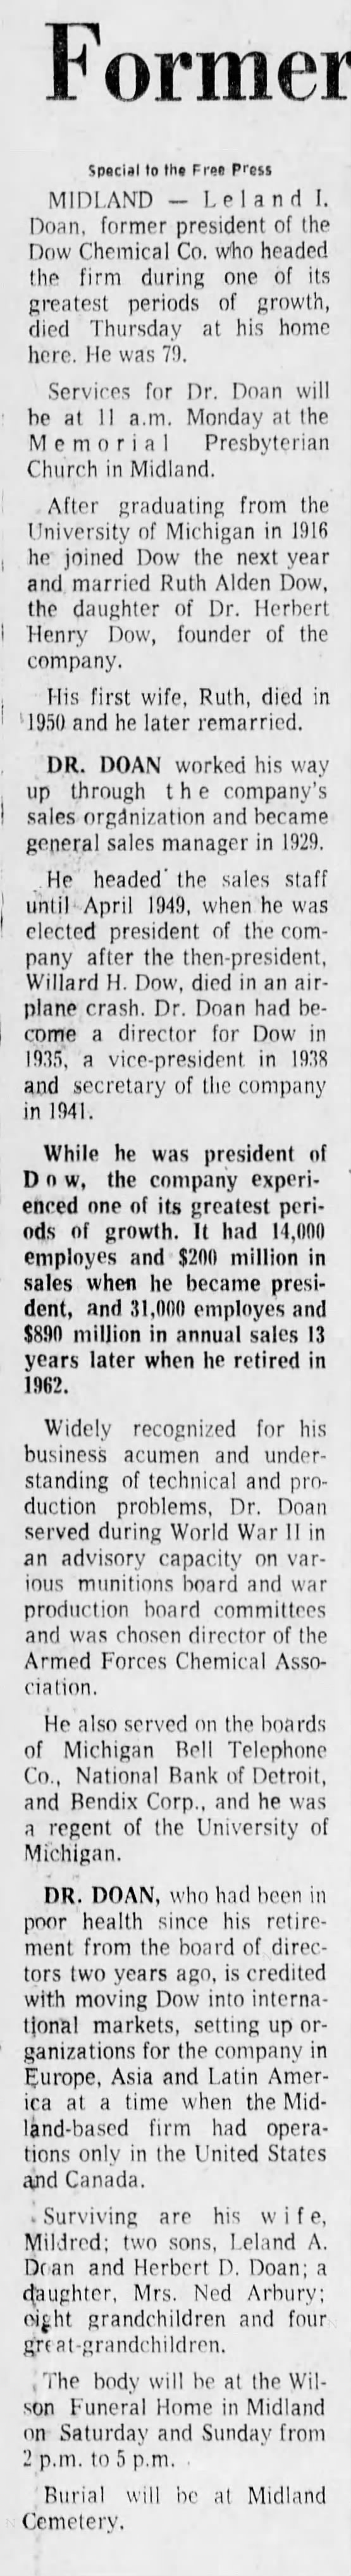 Former Dow Head, L. I. Doan, Dies